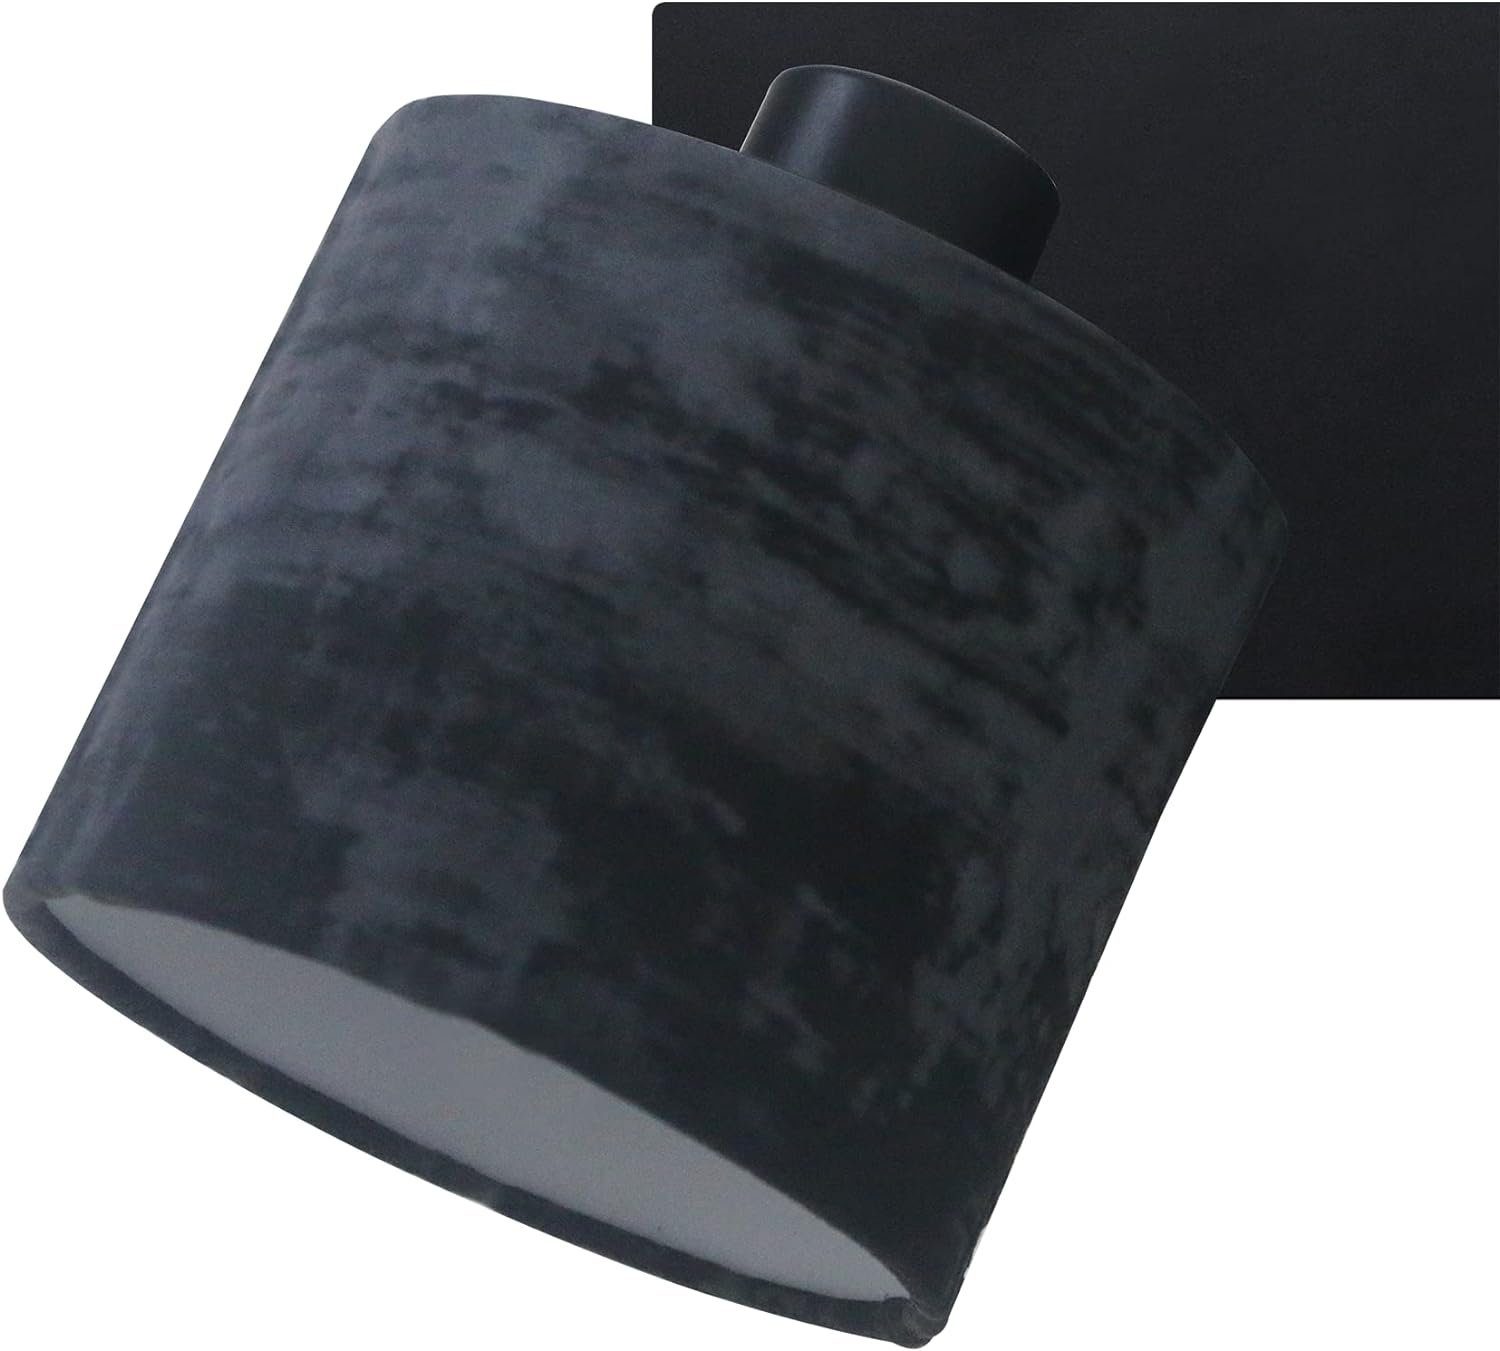 REV Wandleuchte >>tissu velours noir<< Wand- oder Deckenlampe im Vintage-Look